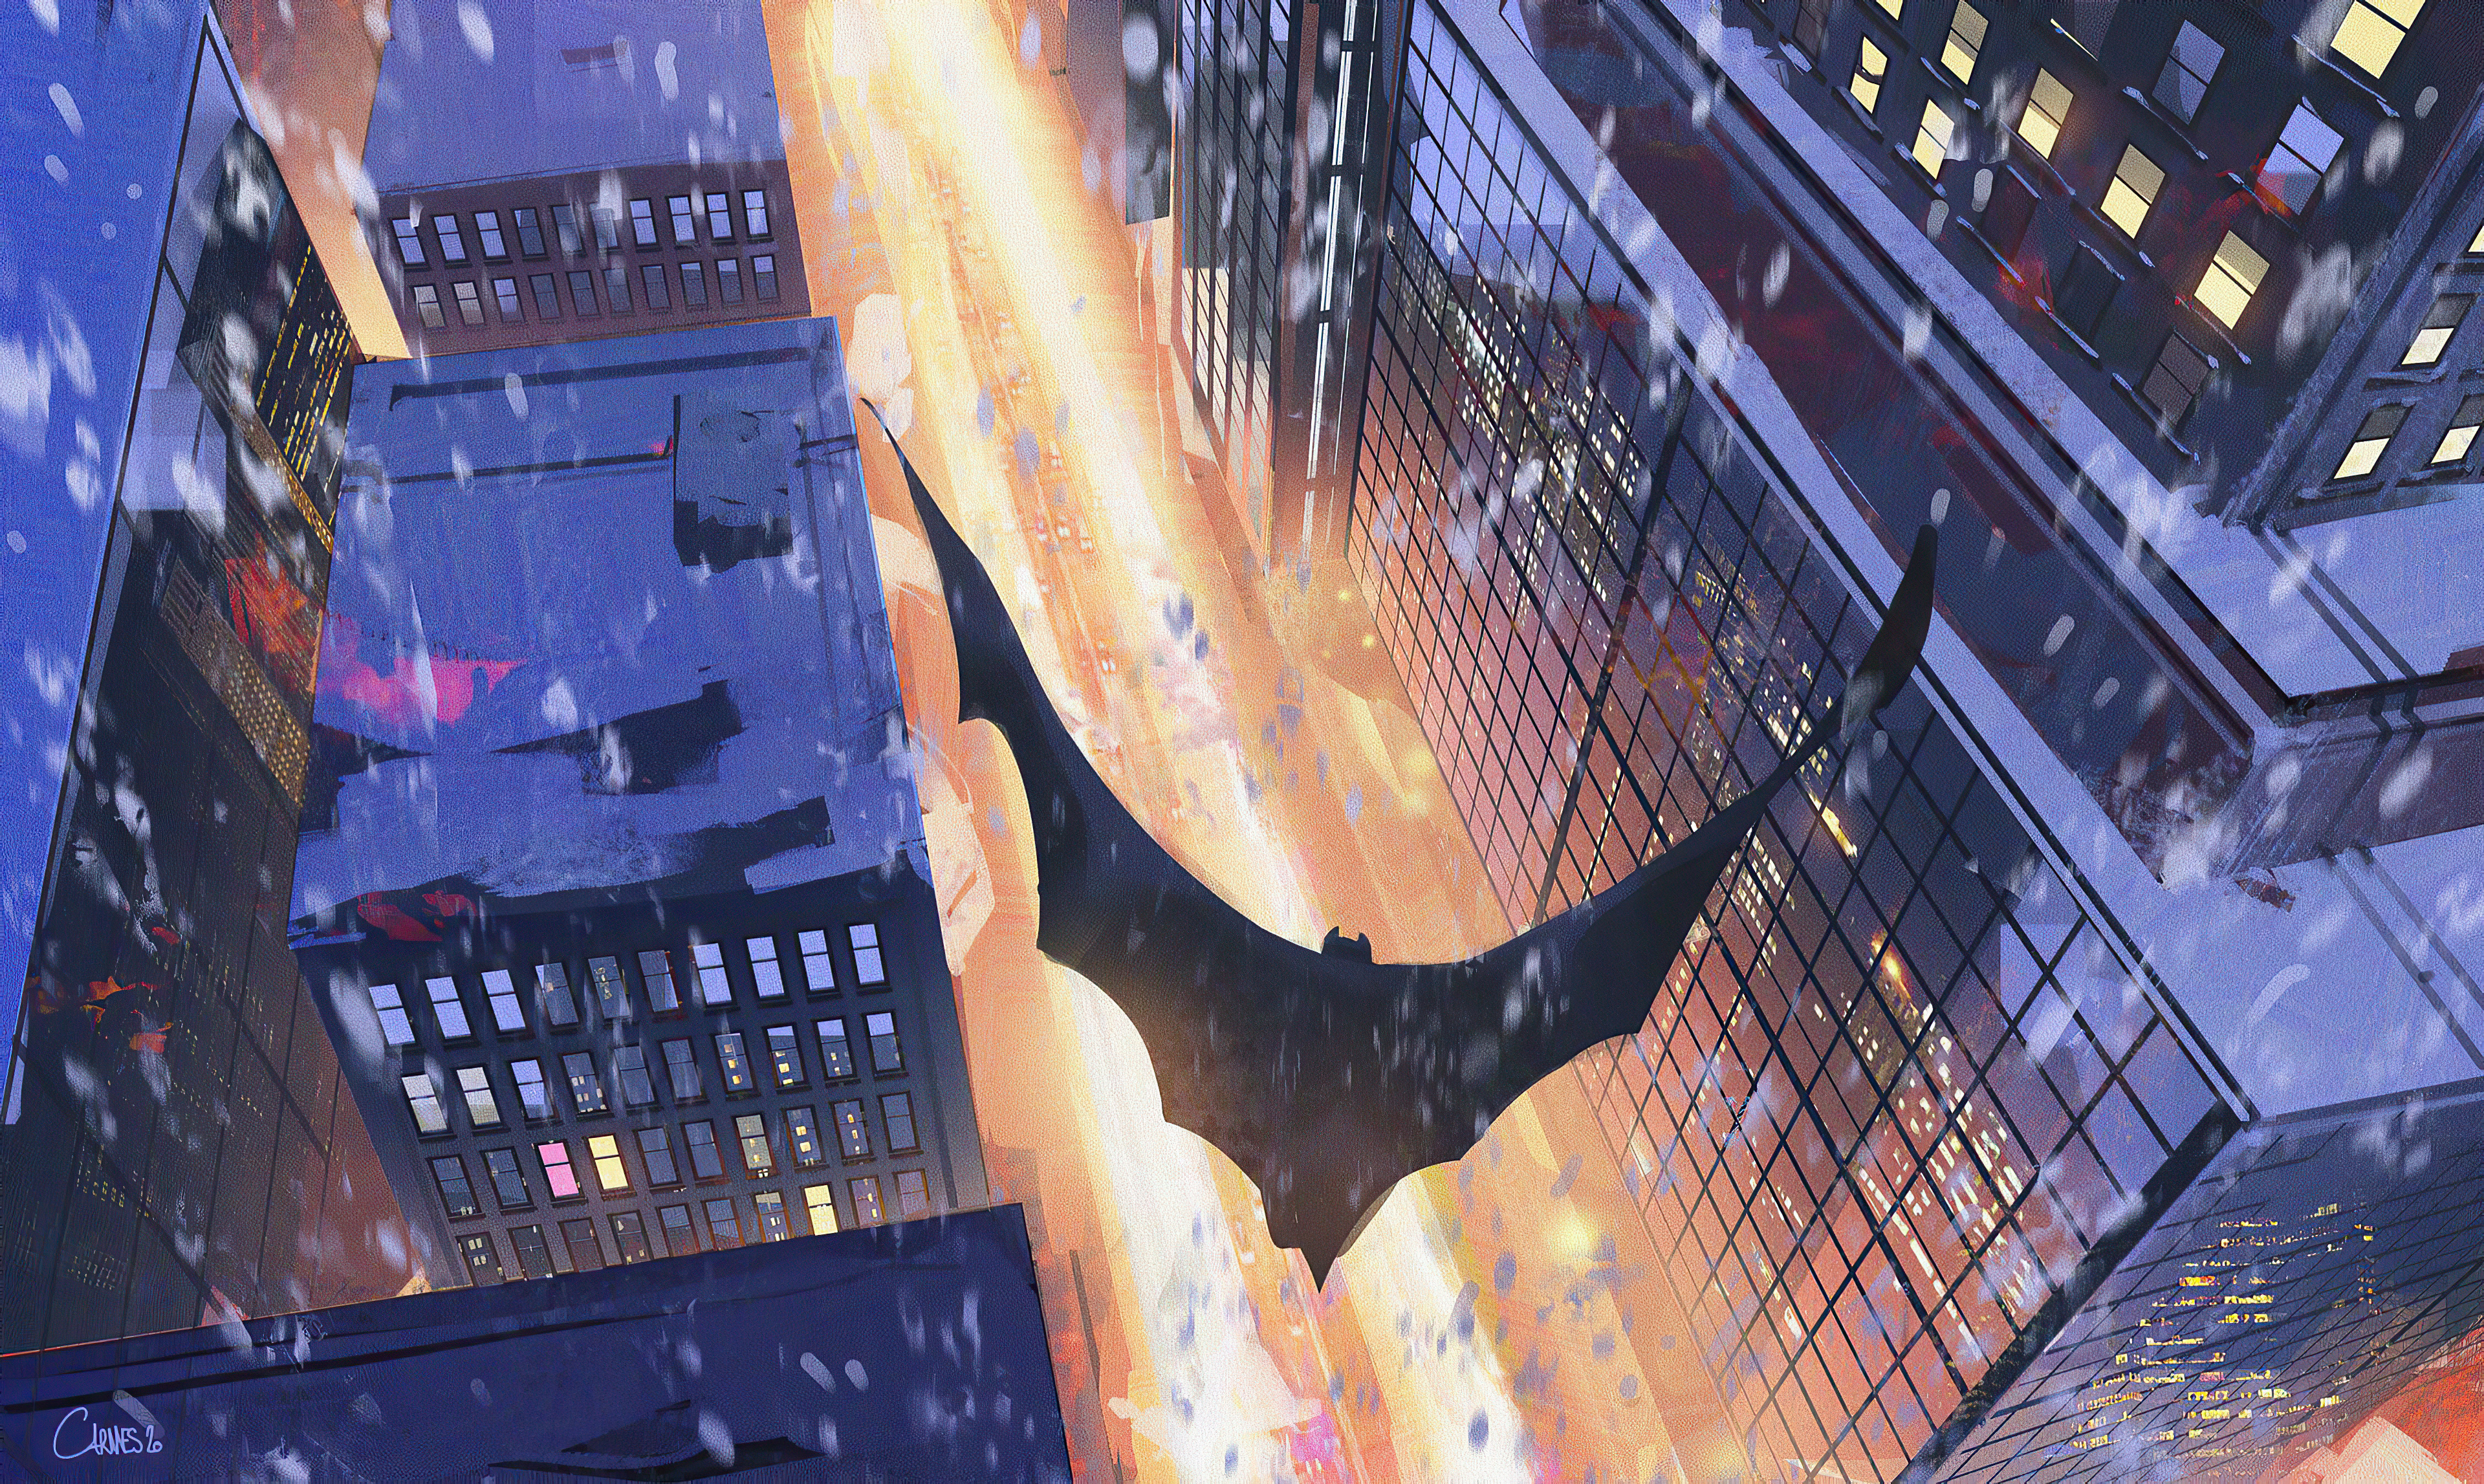 Batman Dc Comics Gotham City 3840x2294